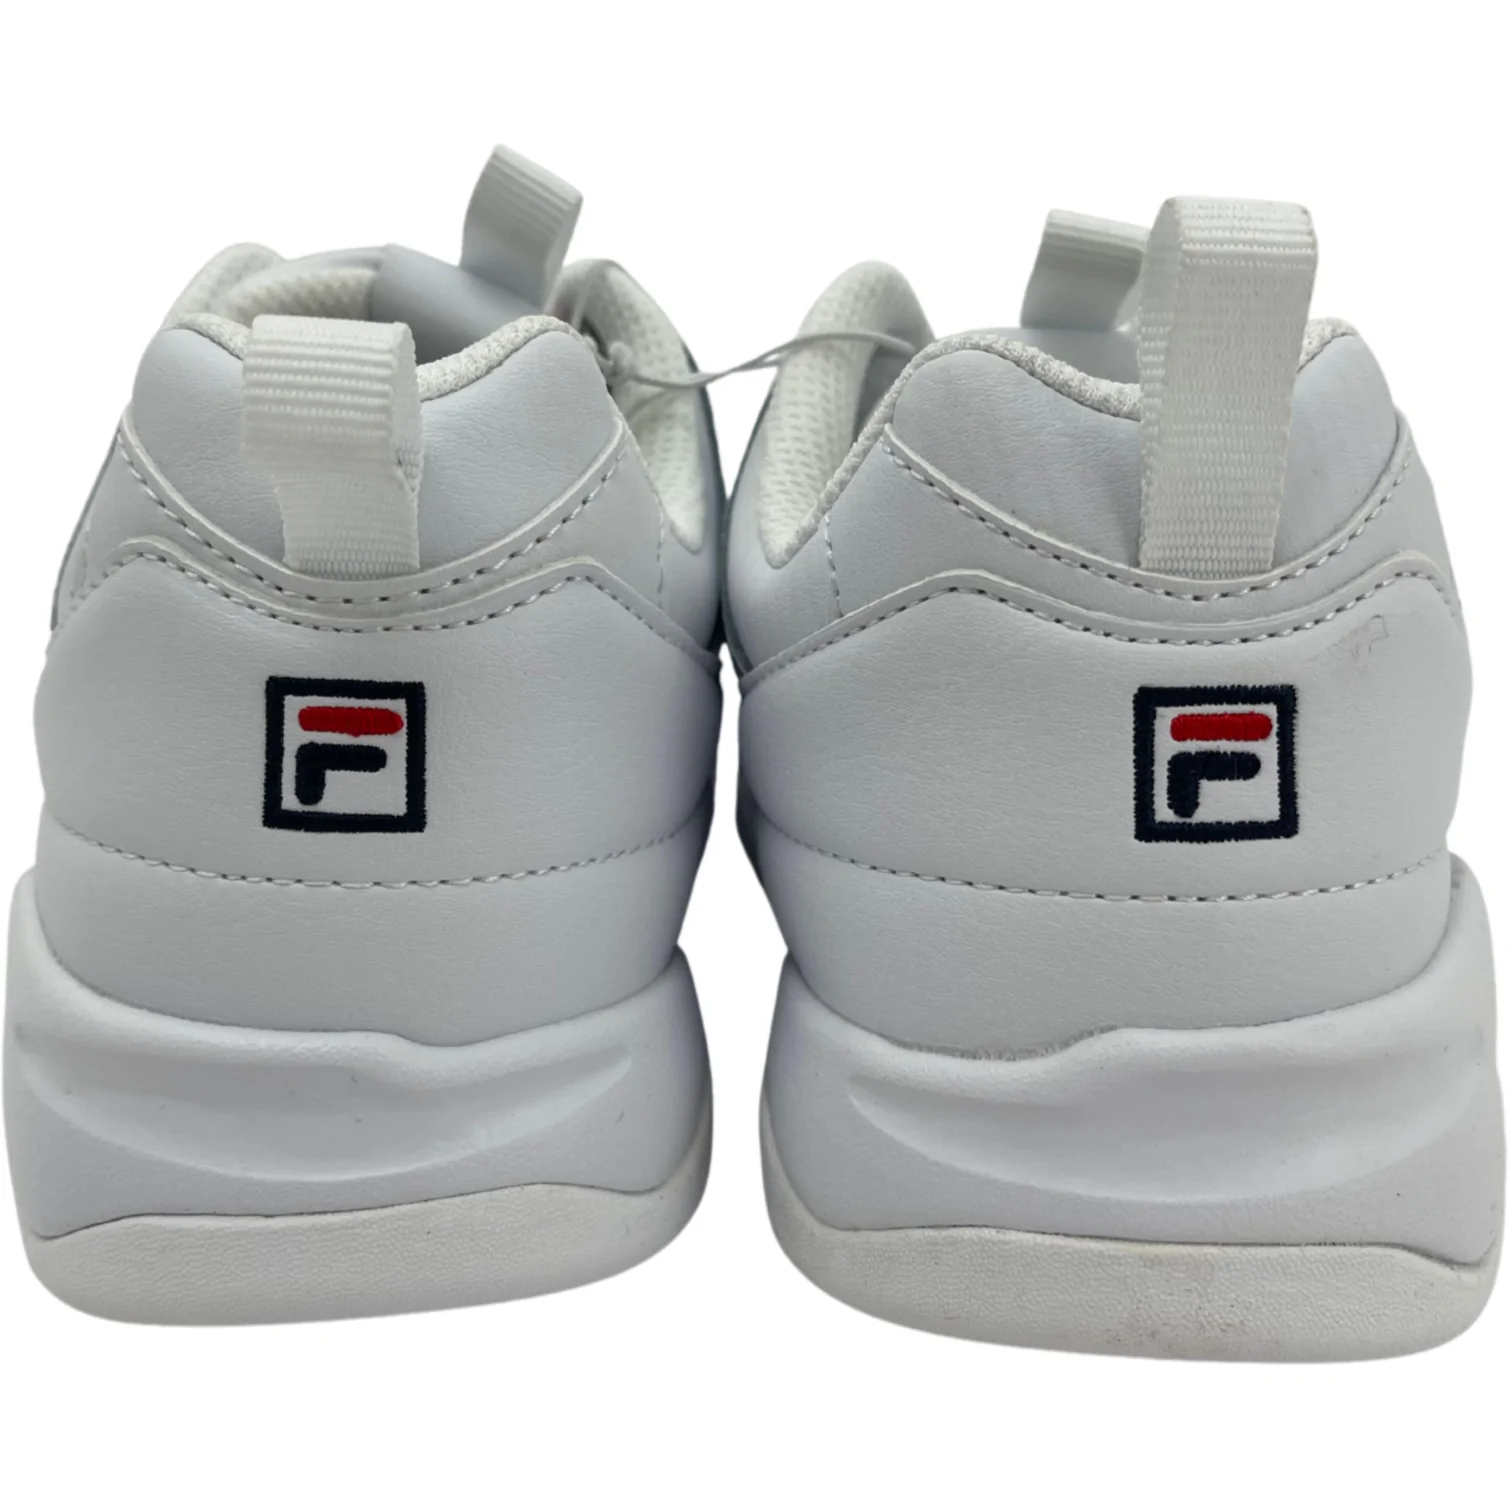 Fila Women's Sneaker / Disarray / White / Streetwear / Size 6